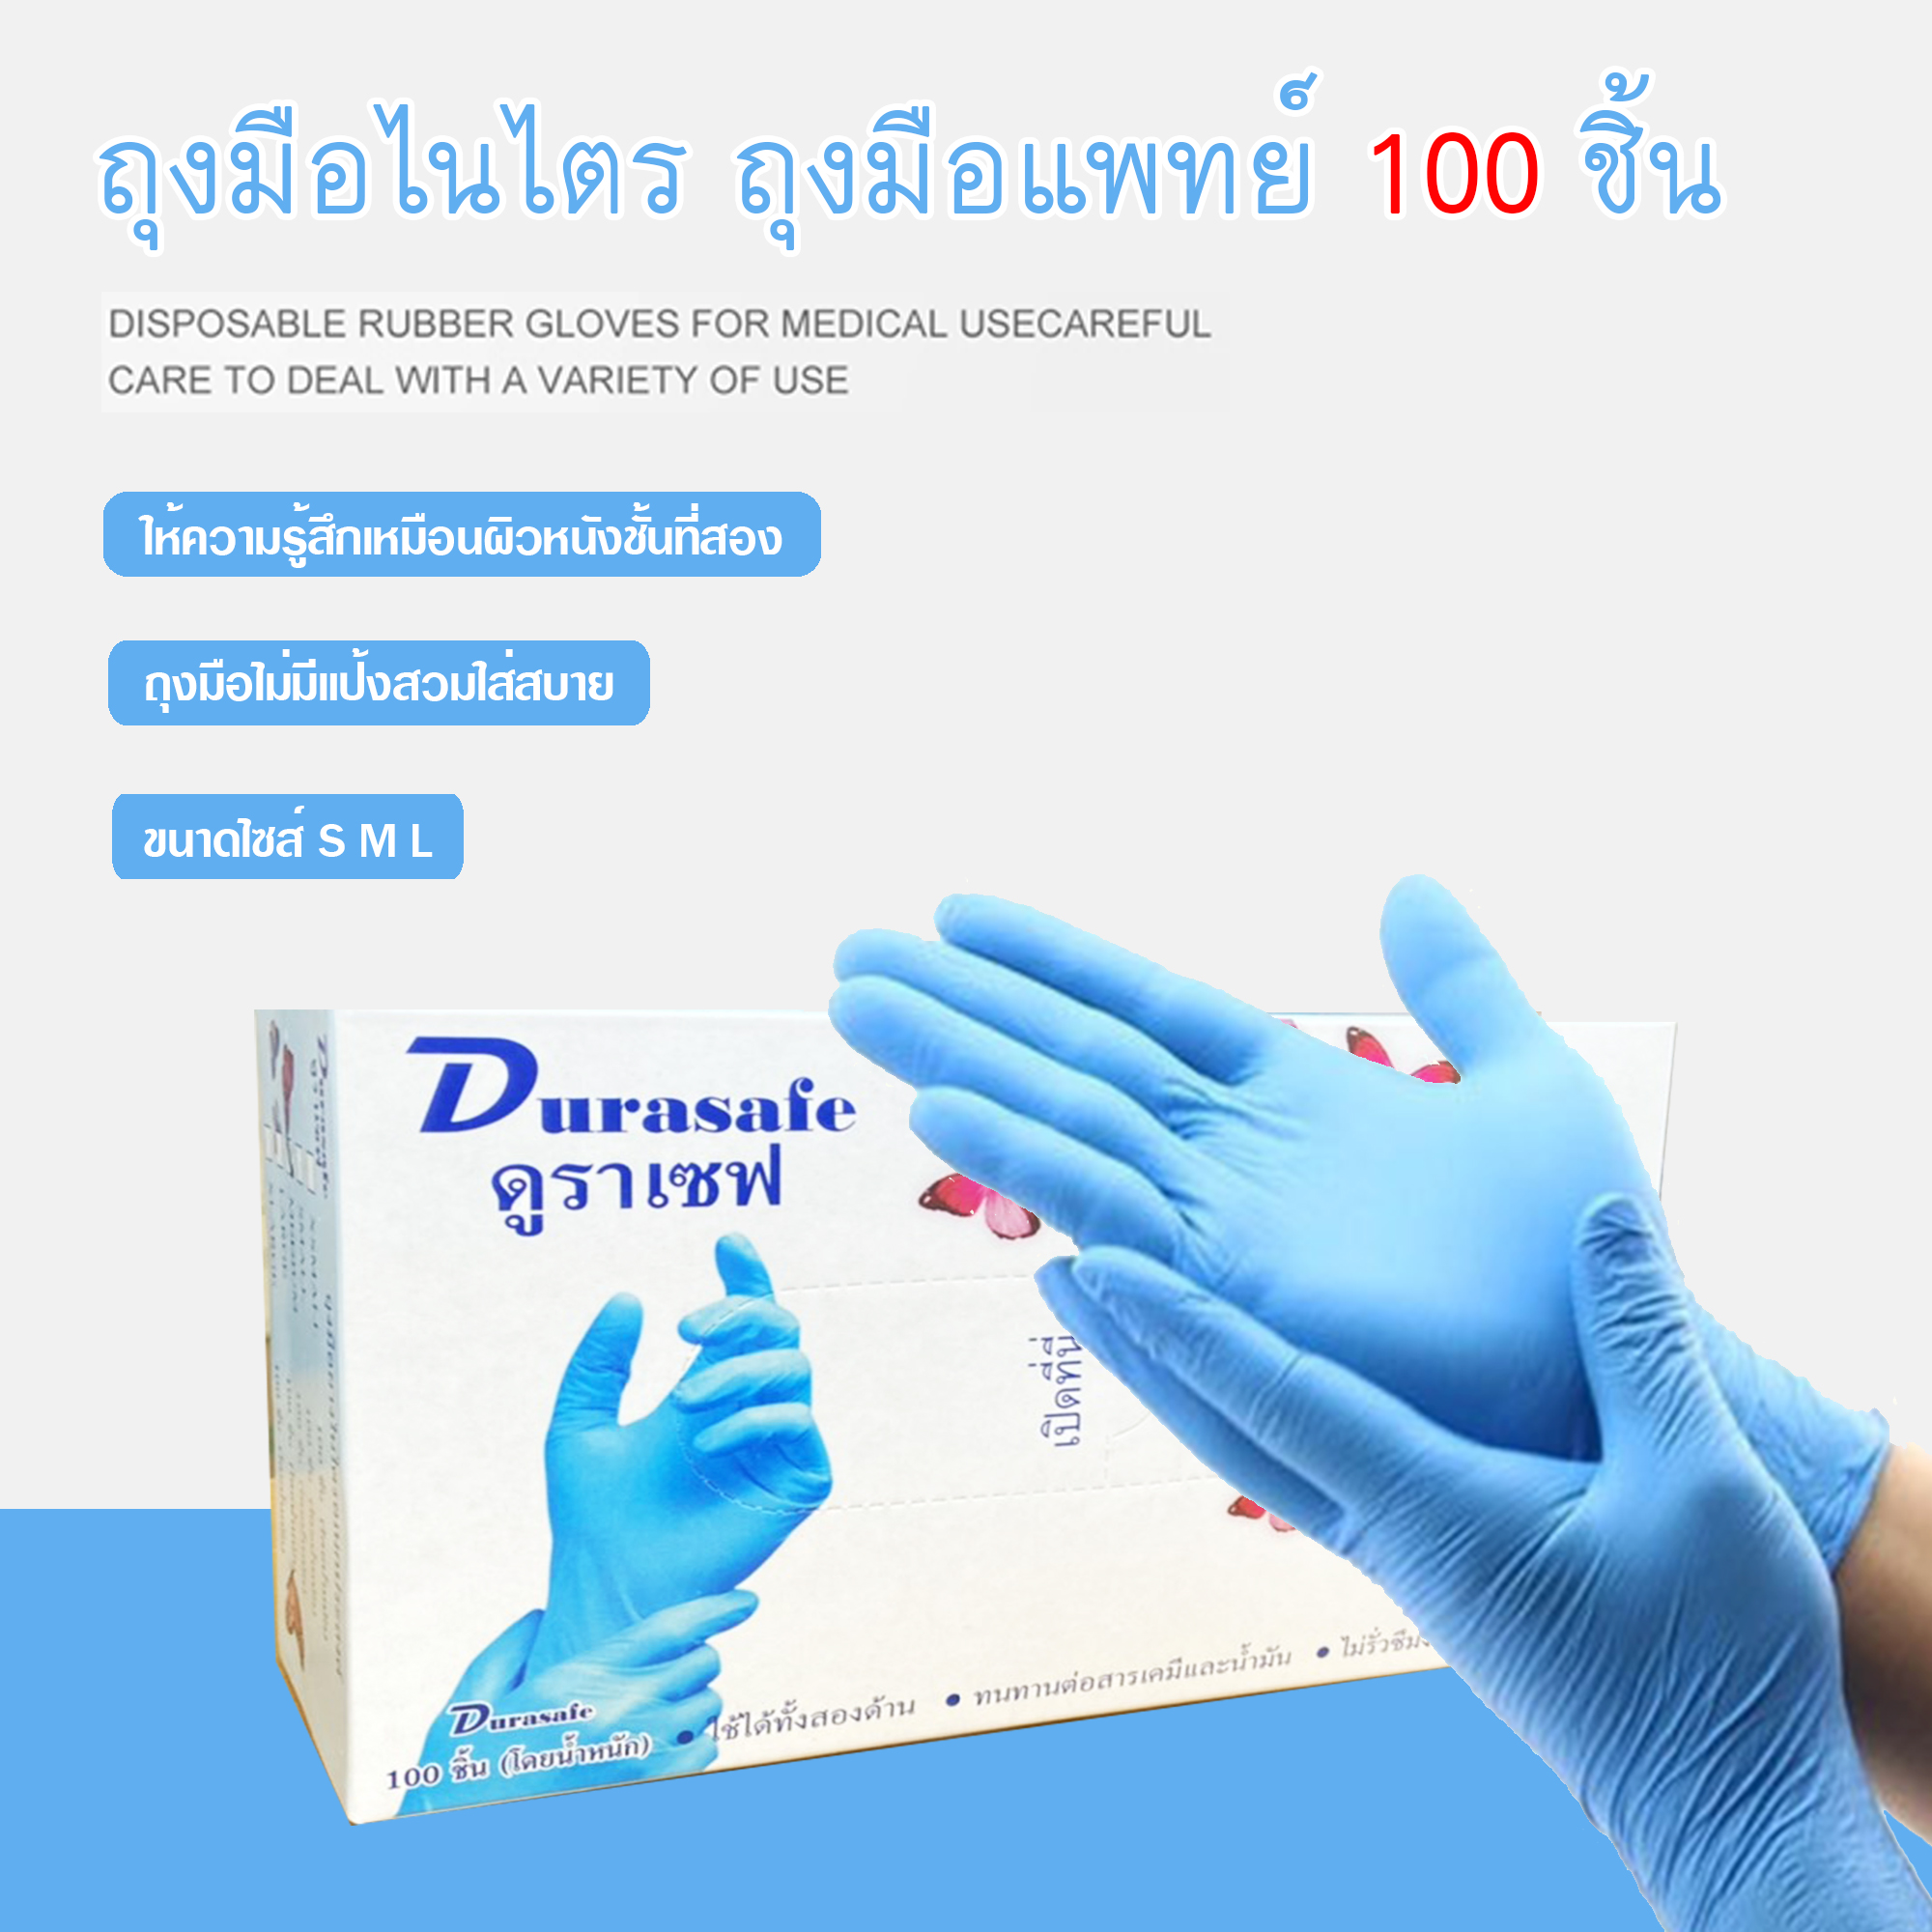 (ไนไตรสีฟ้า) Durasafe ถุงมือยางไนไตร 100 ชิ้น/กล่อง ไซส์ S,M,L ชนิดไม่มีแป้ง รุ่นประหยัด ถุงมือไนไตร ถุงมือยาง